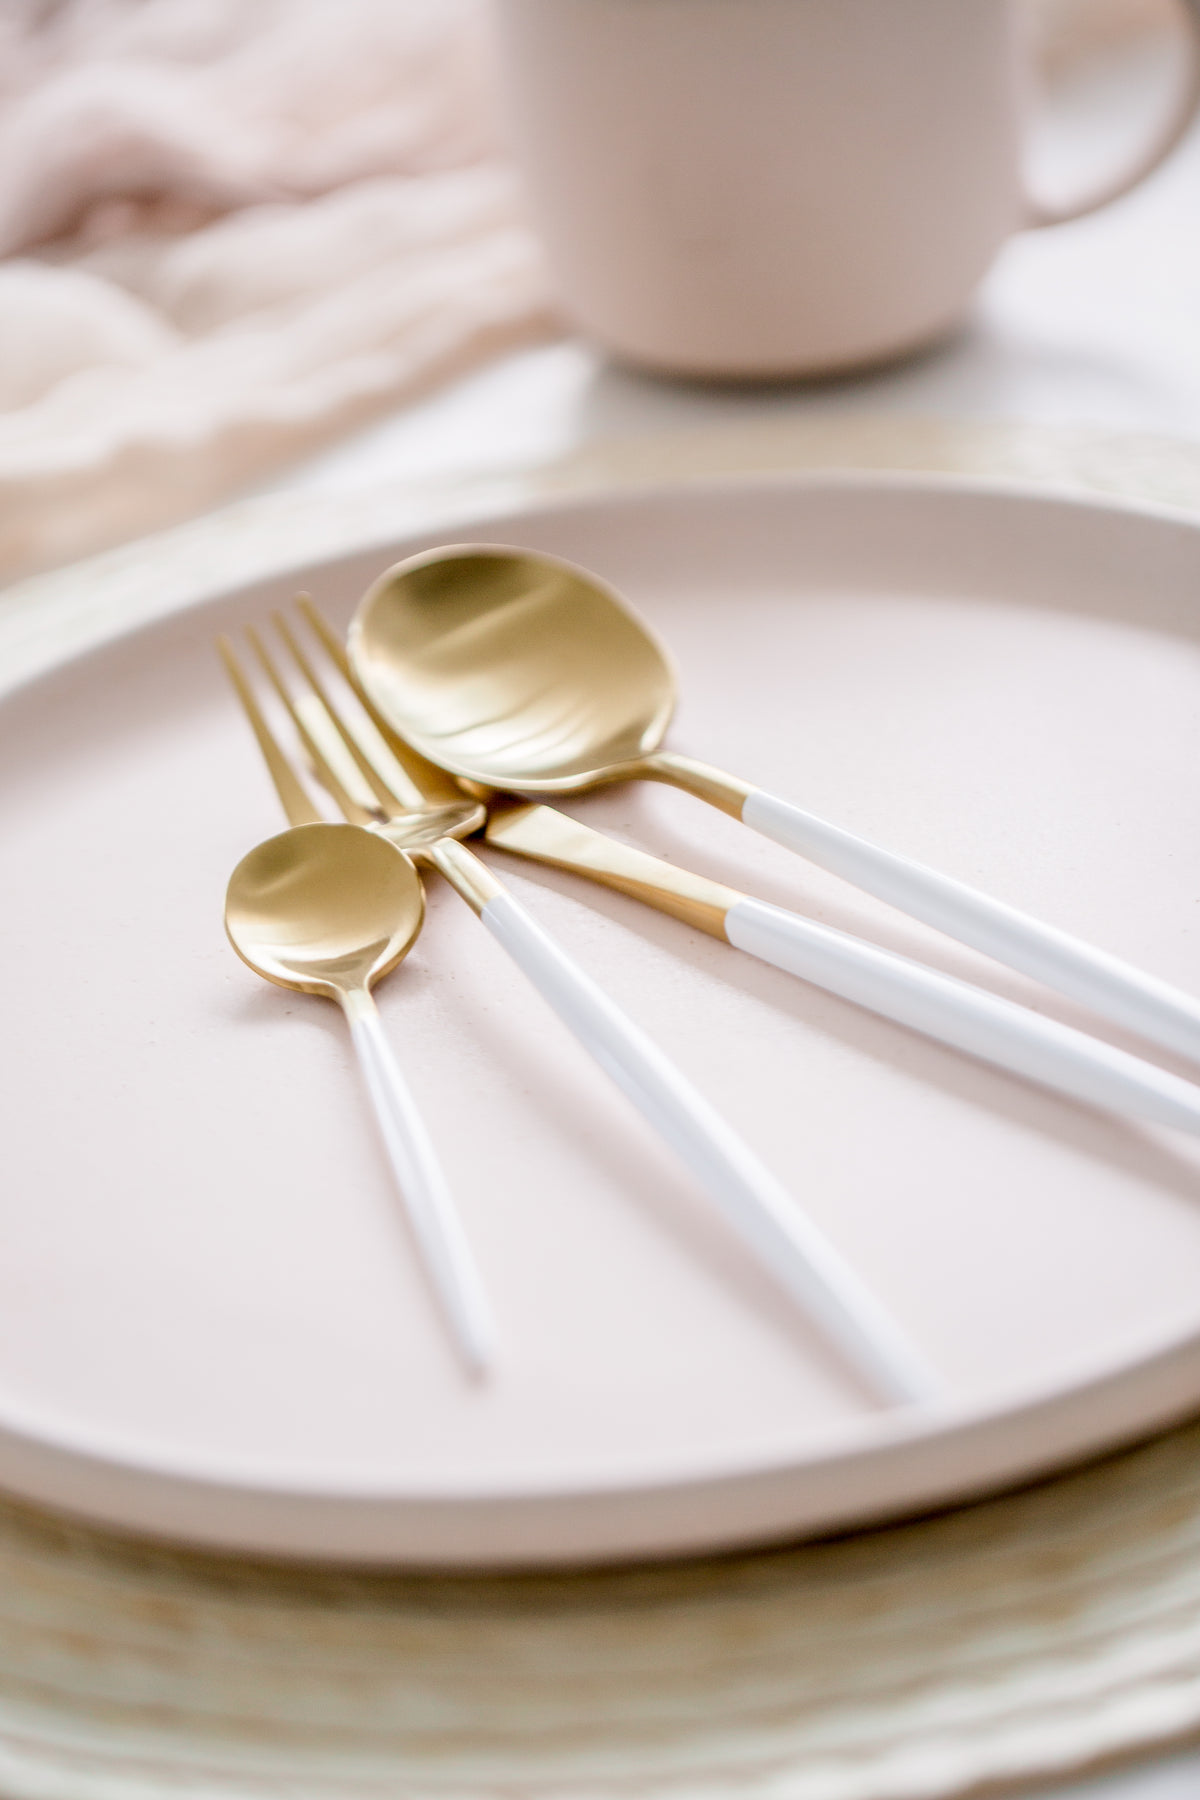 金色和白色餐具放在盘子上